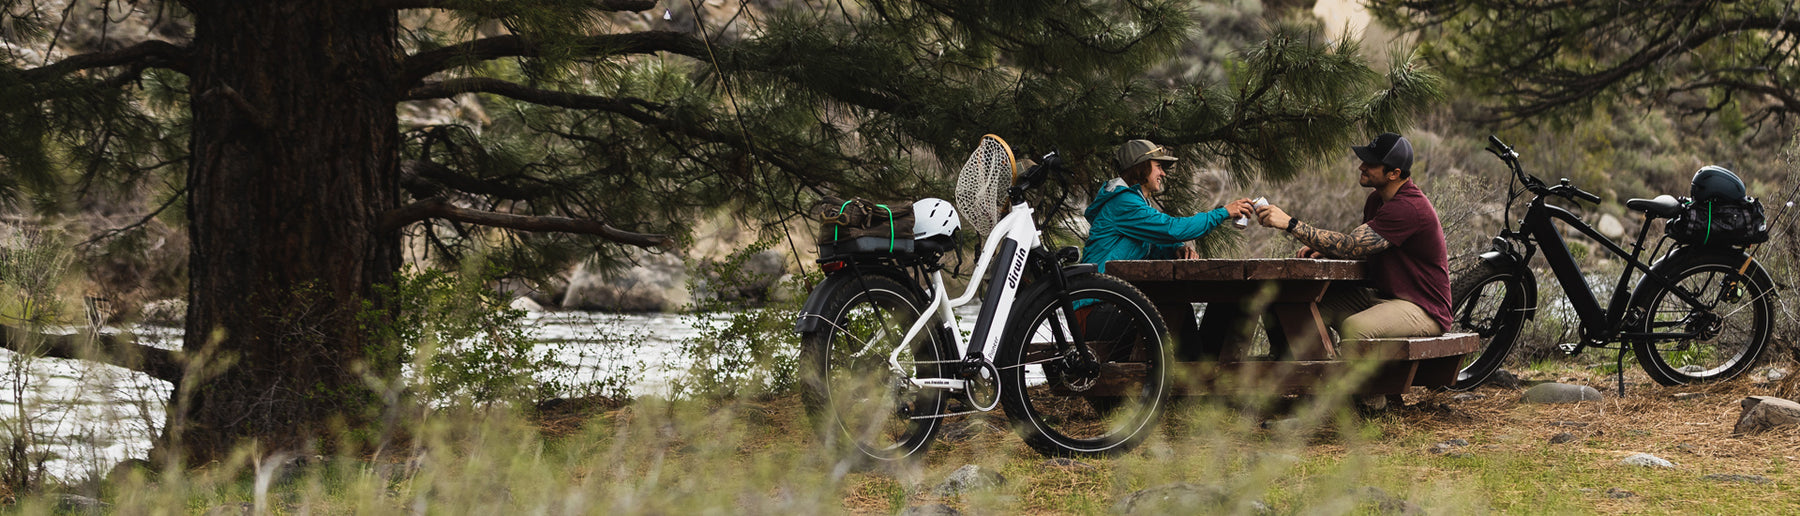 Dirwin bike , Fishing bike,Explore the World - Find What You Seek